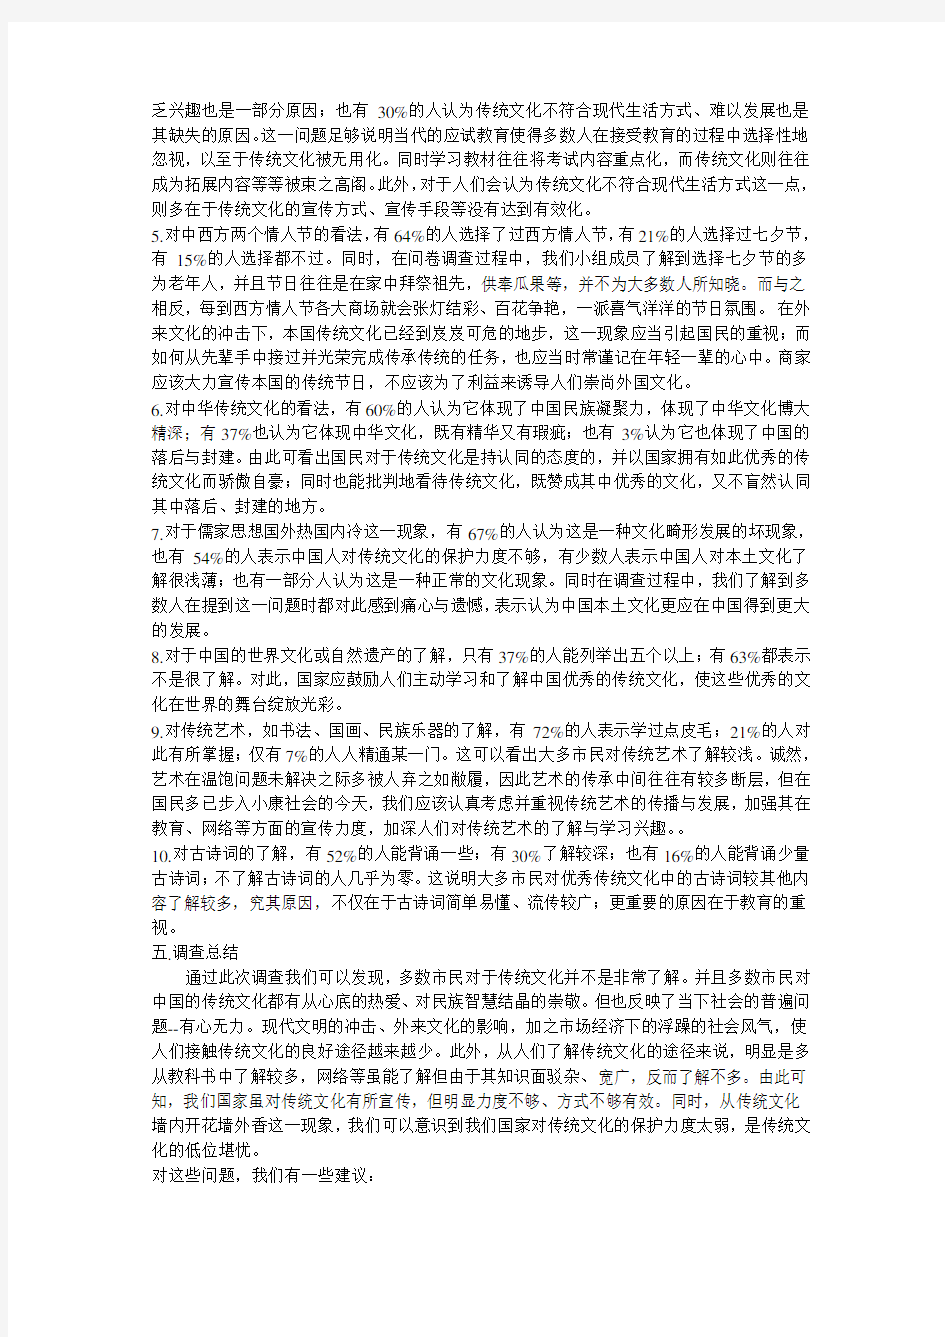 (完整版)中华优秀传统文化问卷调查报告